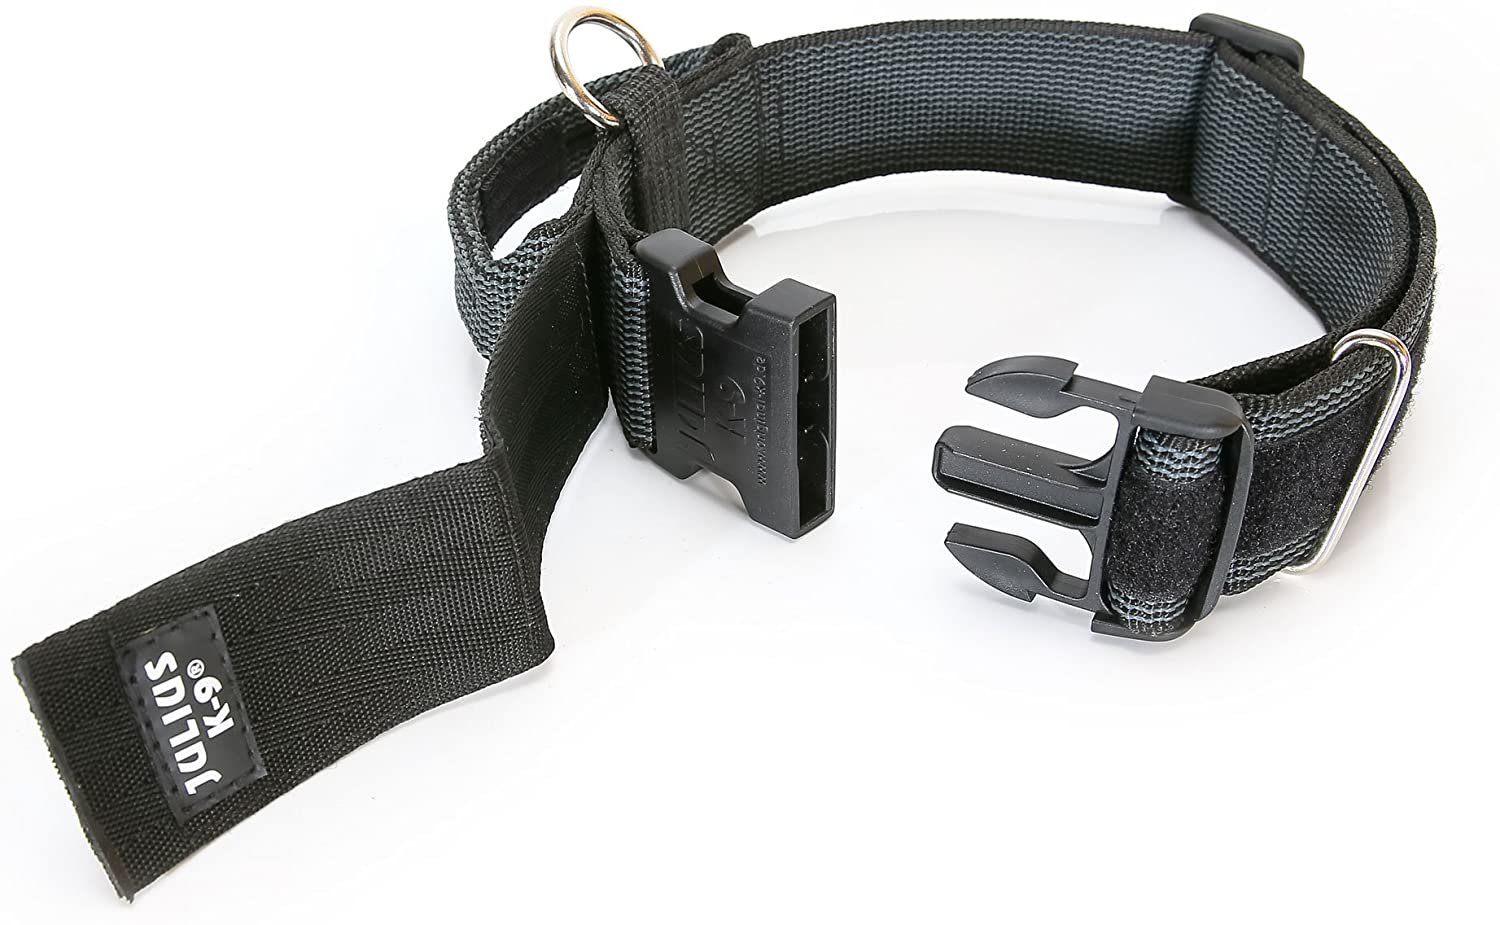  Julius-K9 Collar Color & Gray con la manija, la cerradura de seguridad y el remiendo intercambiables, 50 mm (49-70 cm), Negro-Gris 